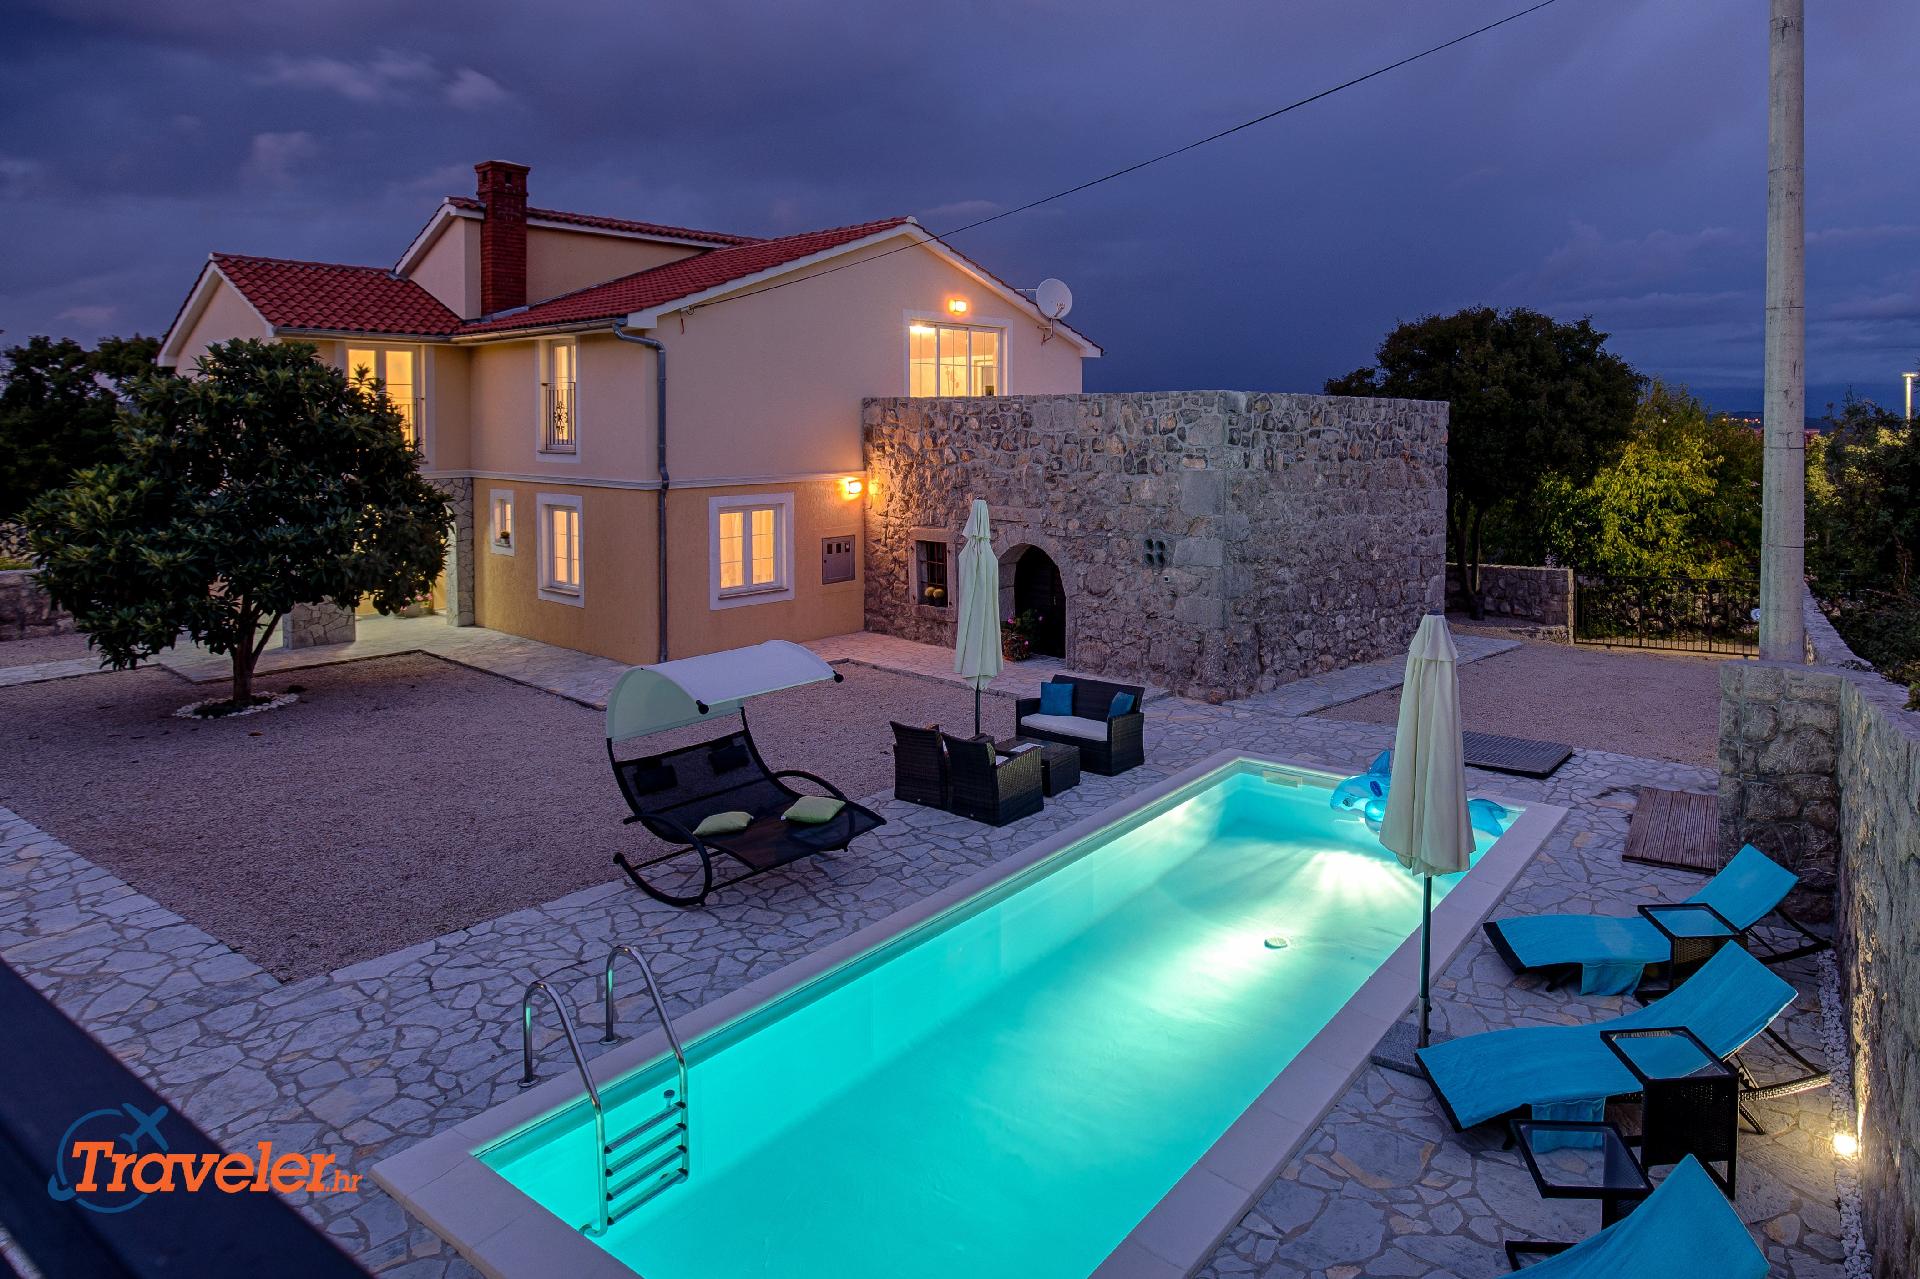 Ferienhaus mit Privatpool für 9 Personen  + 1 Ferienhaus in Kroatien